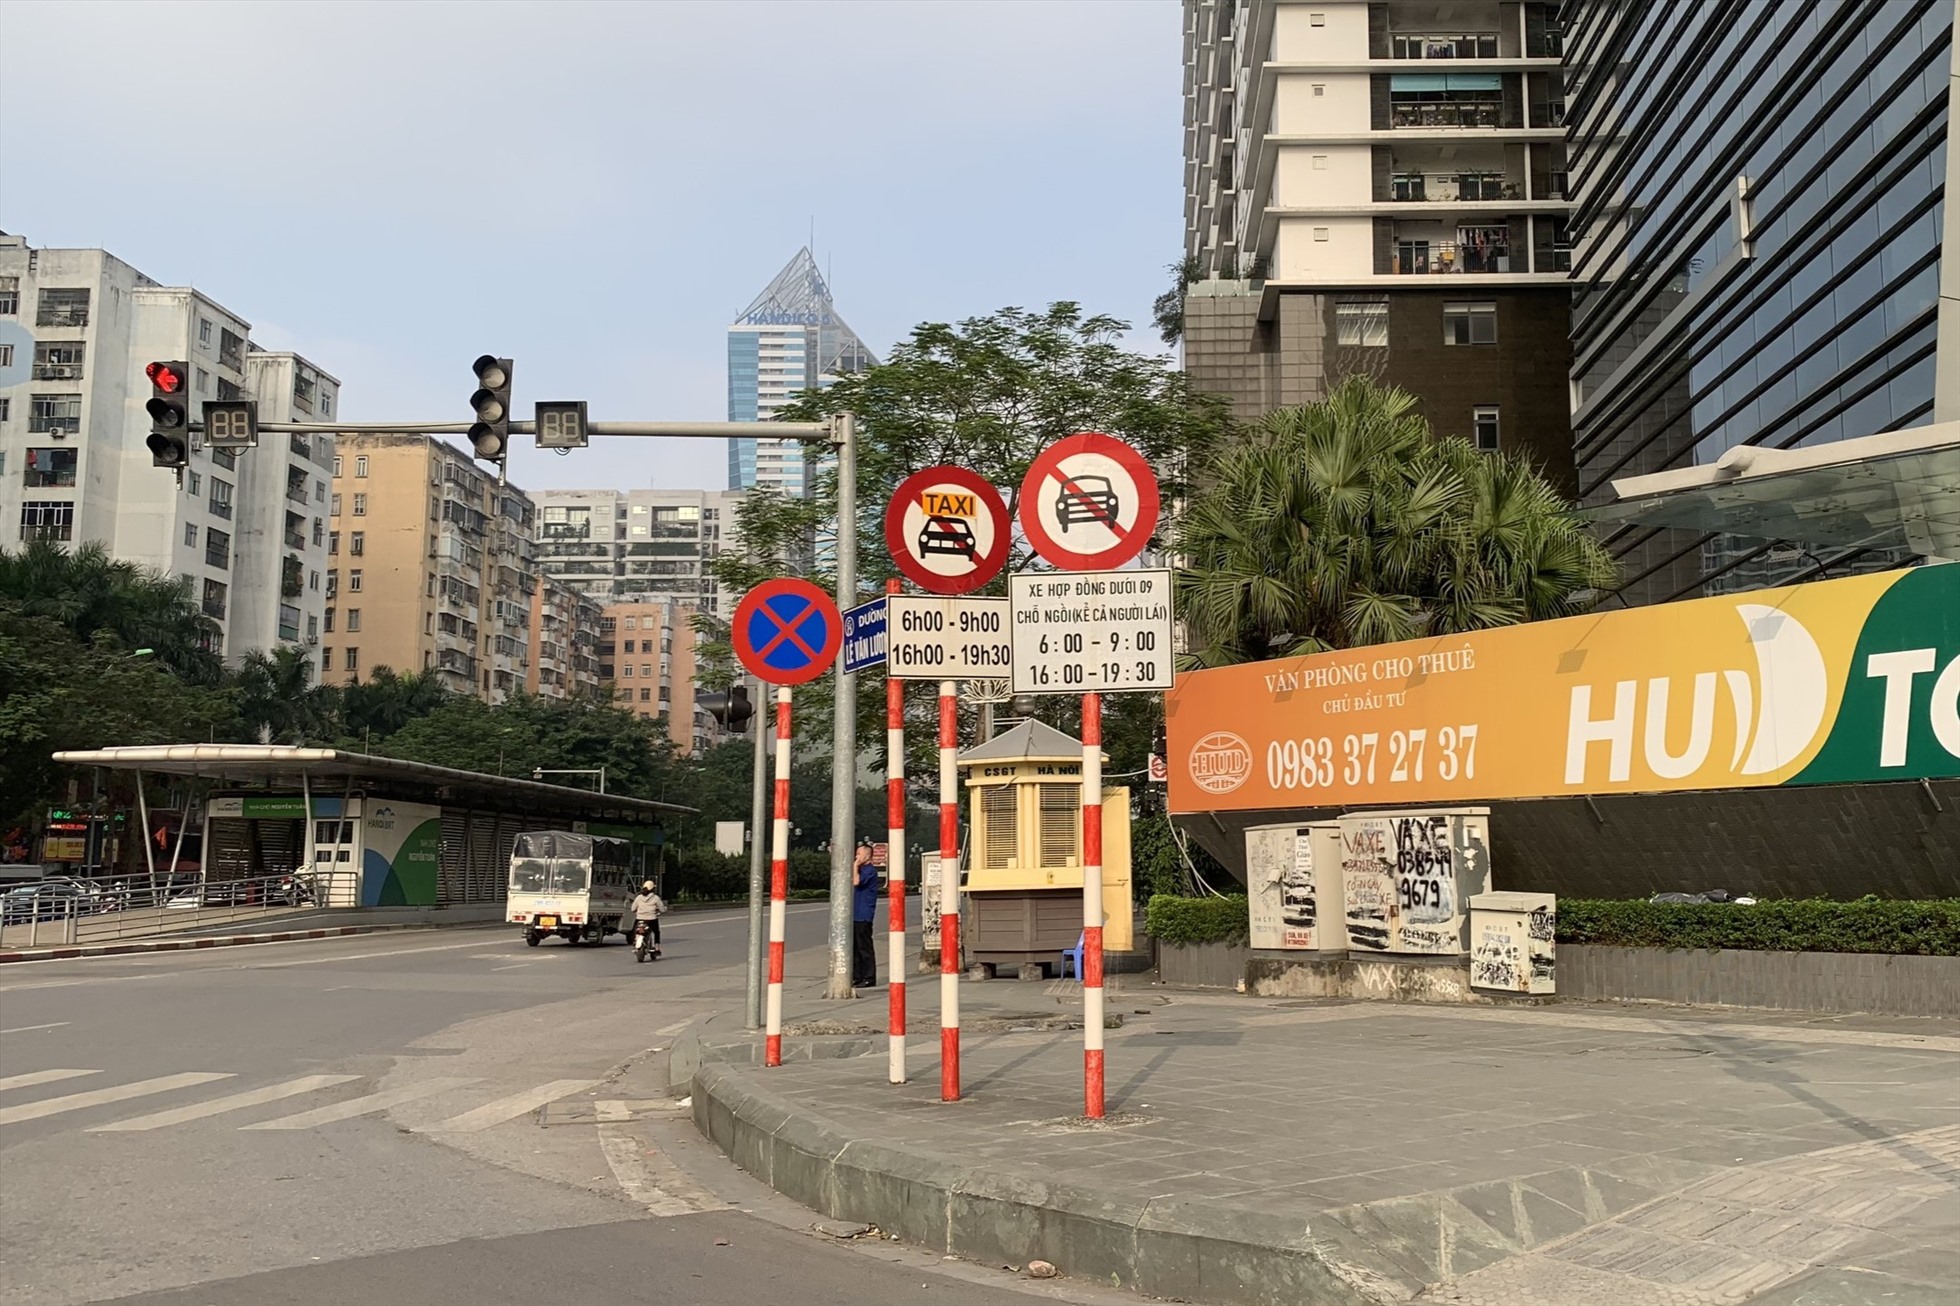 Biển cấm xe taxi và xe hợp đồng dưới 9 chỗ trên nhiều tuyến phố Hà Nội. Ảnh: Thu Hiền